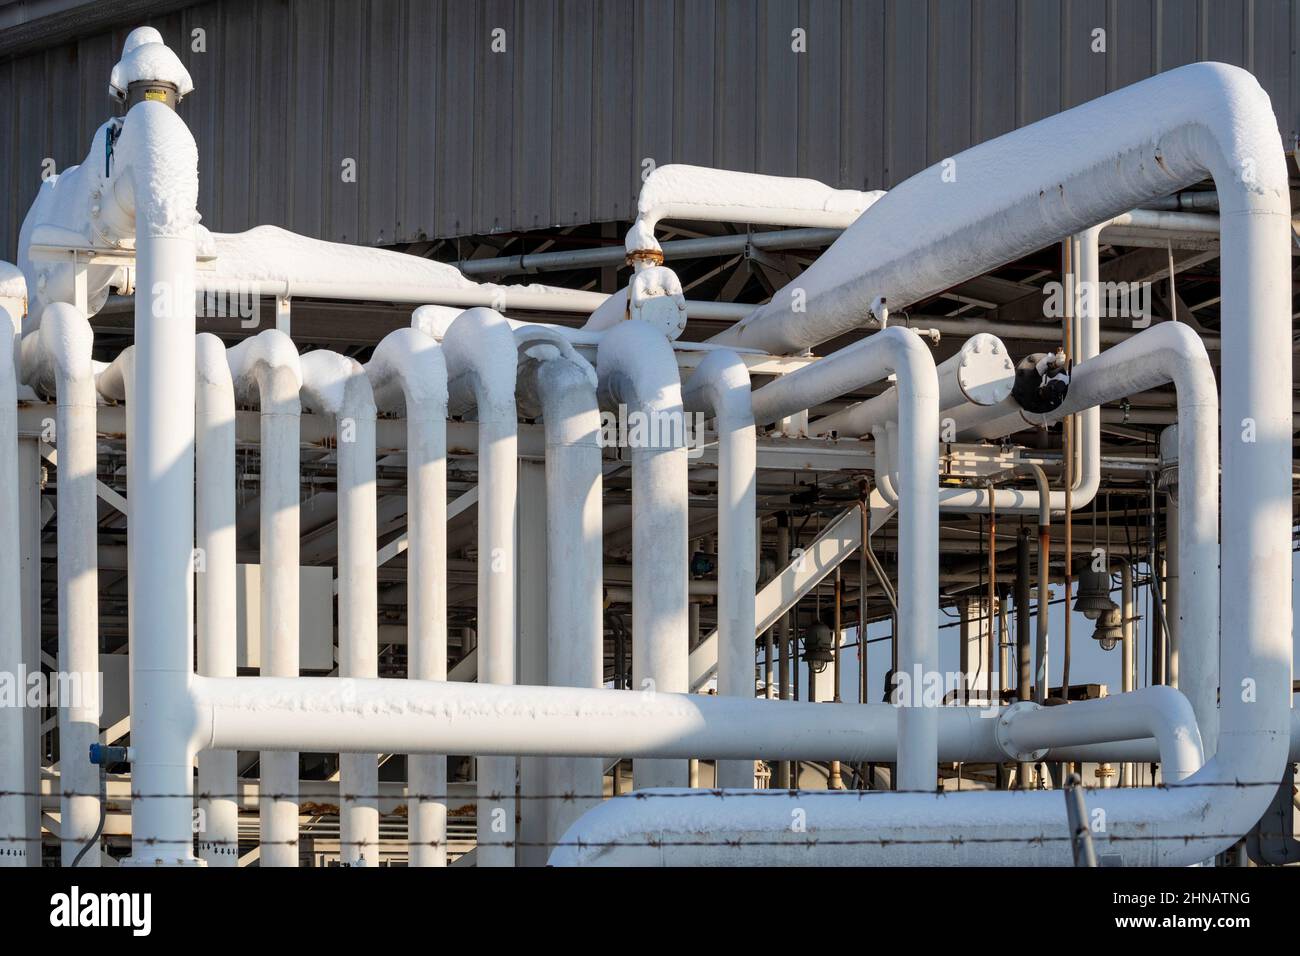 River Rouge, Michigan – verschneite Rohre an den Buckeye Terminals, einem Ölterminal und Massenlager. Stockfoto